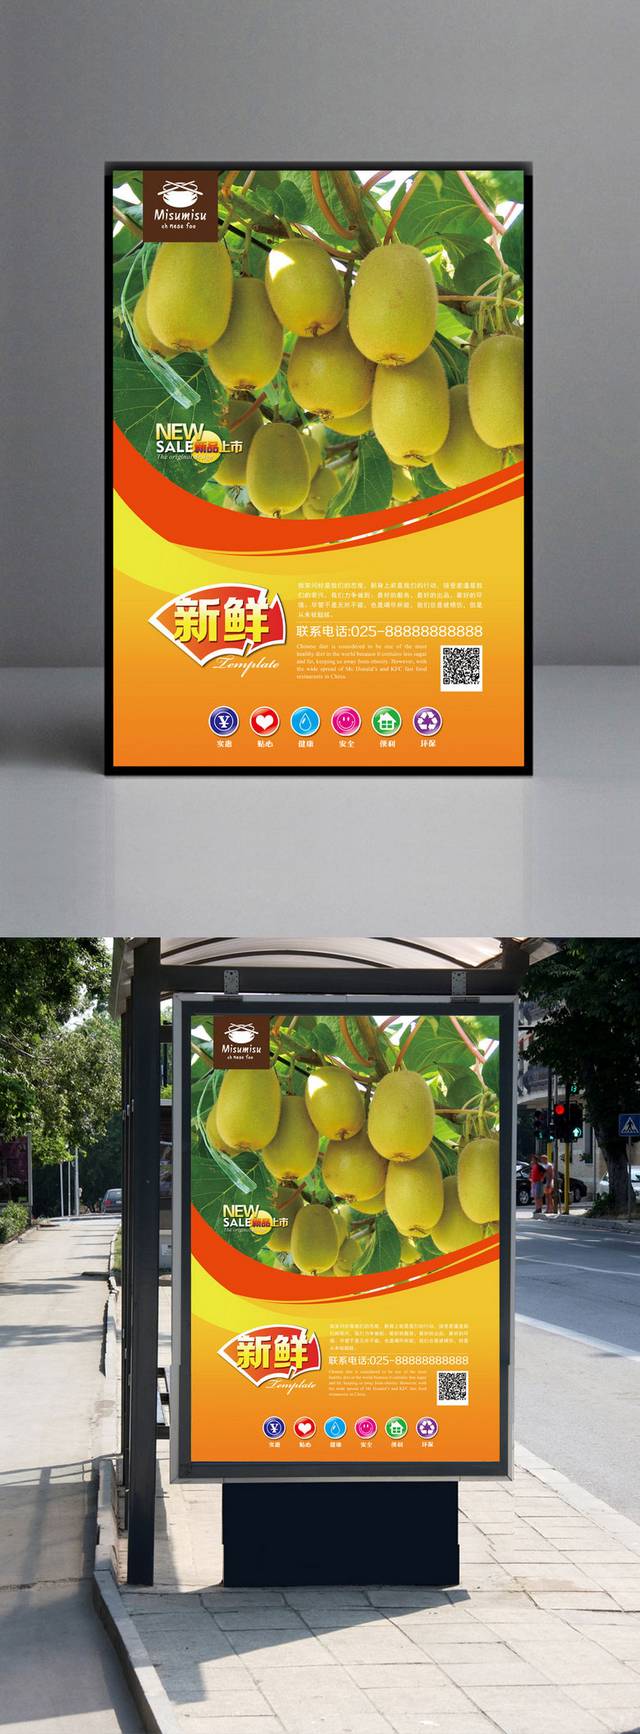 清新绿色水果猕猴桃海报设计